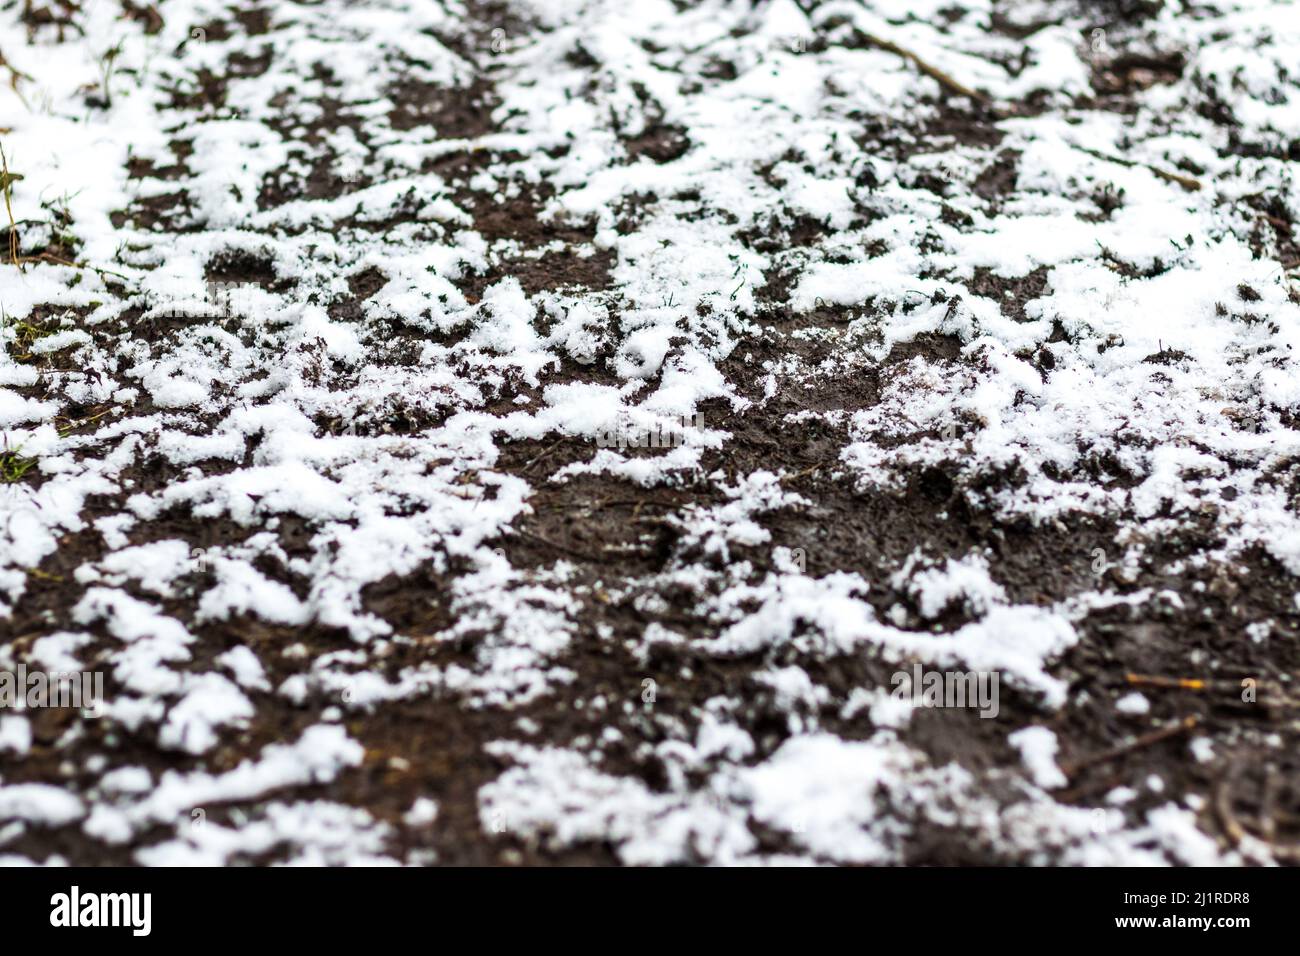 Frisch gefallener Schnee auf schlammig zertrampelter Erde - begehrend auf dem Boden Stockfoto